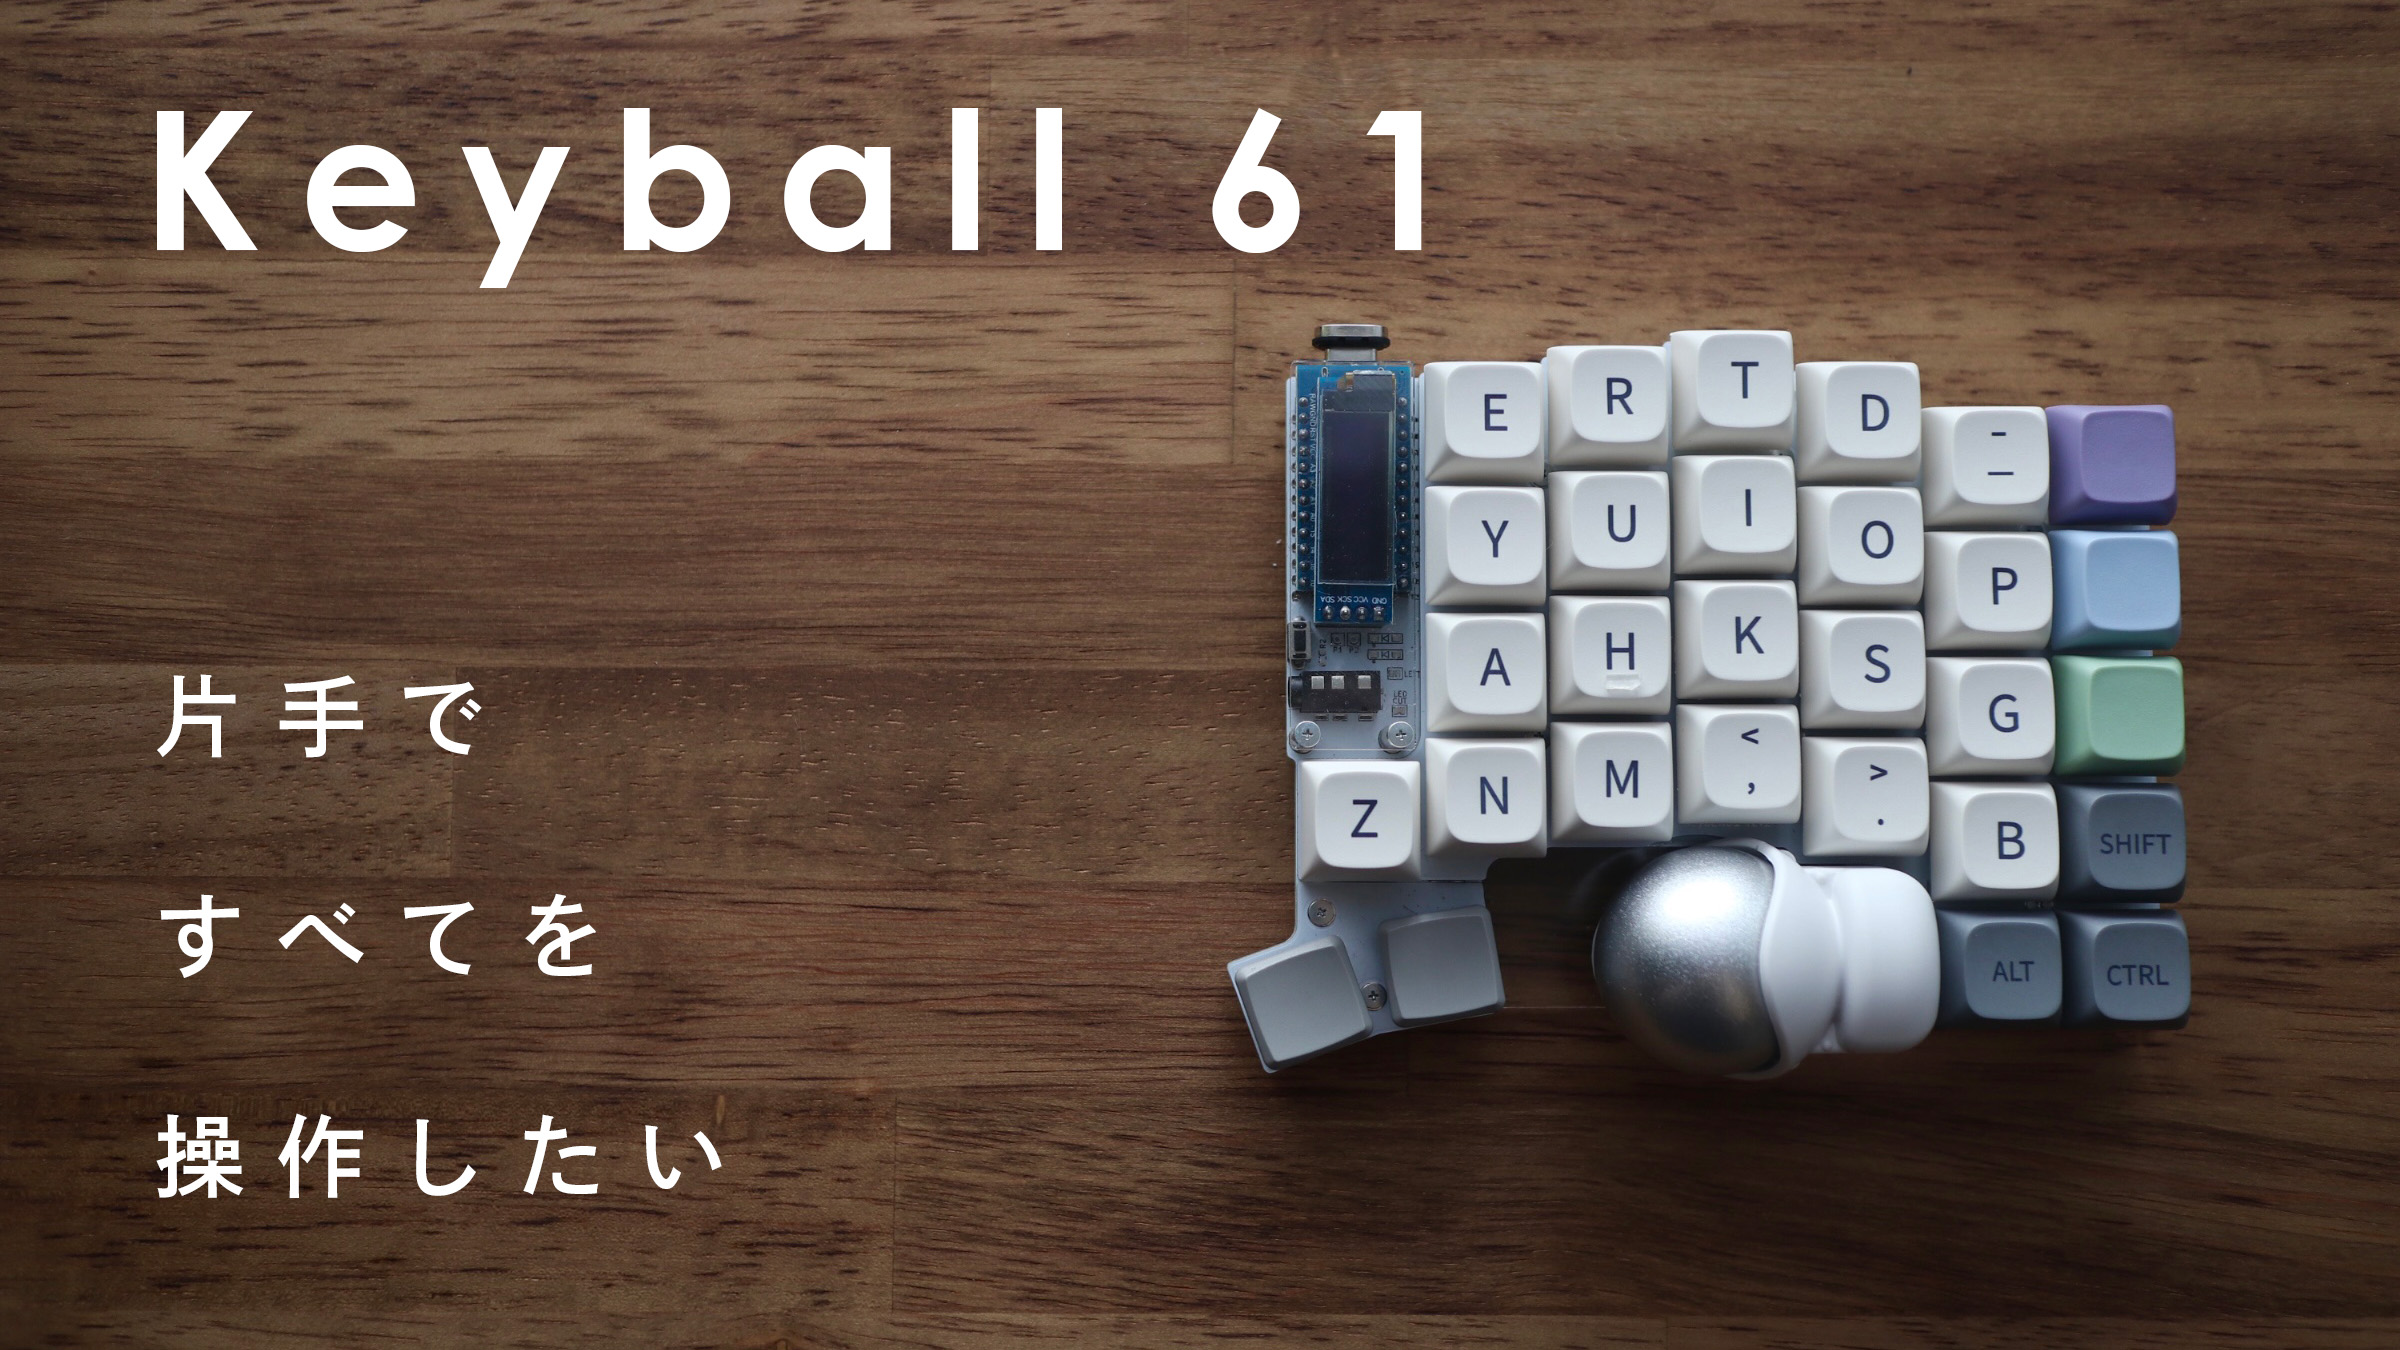 Keyball61はキーボード＋マウスの完全片手デバイスになり得るか | モガクのデスク